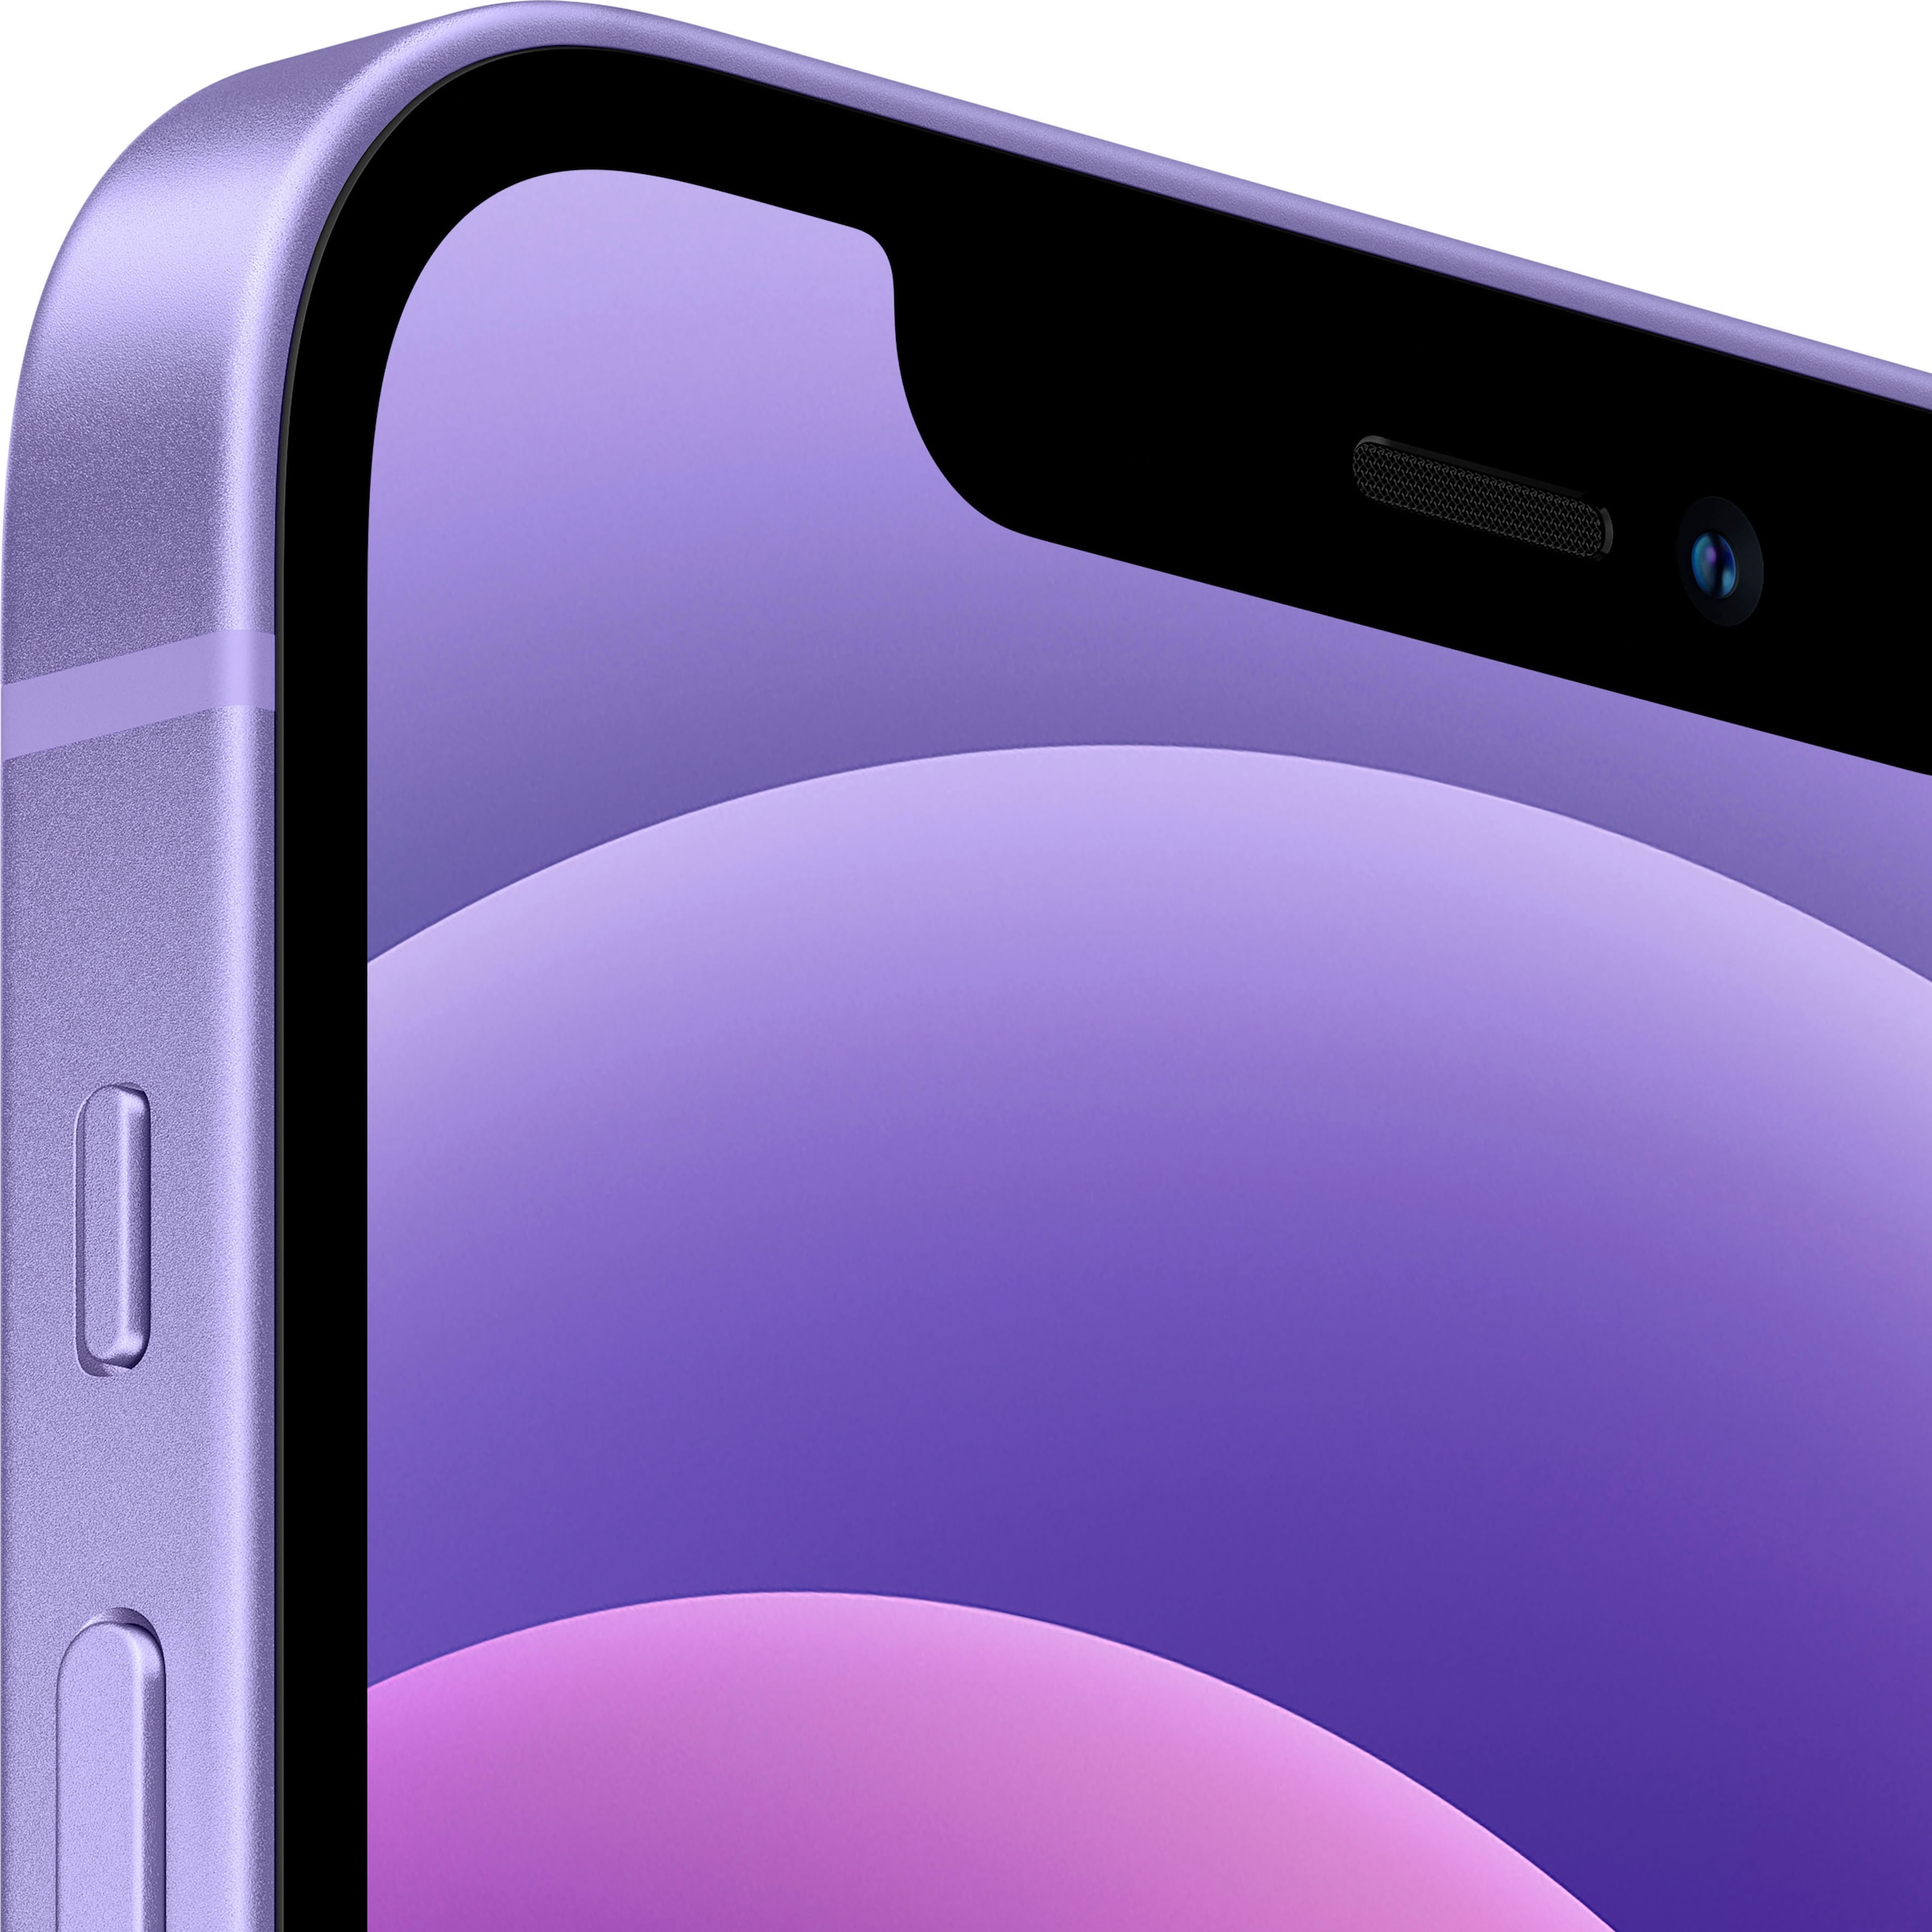 Apple Smartphone »iPhone 12 128GB«, purple, 15,5 cm/6,1 Zoll, 128 GB Speicherplatz, 12 MP Kamera, ohne Strom Adapter und Kopfhörer, kompatibel mit AirPods, Earpods